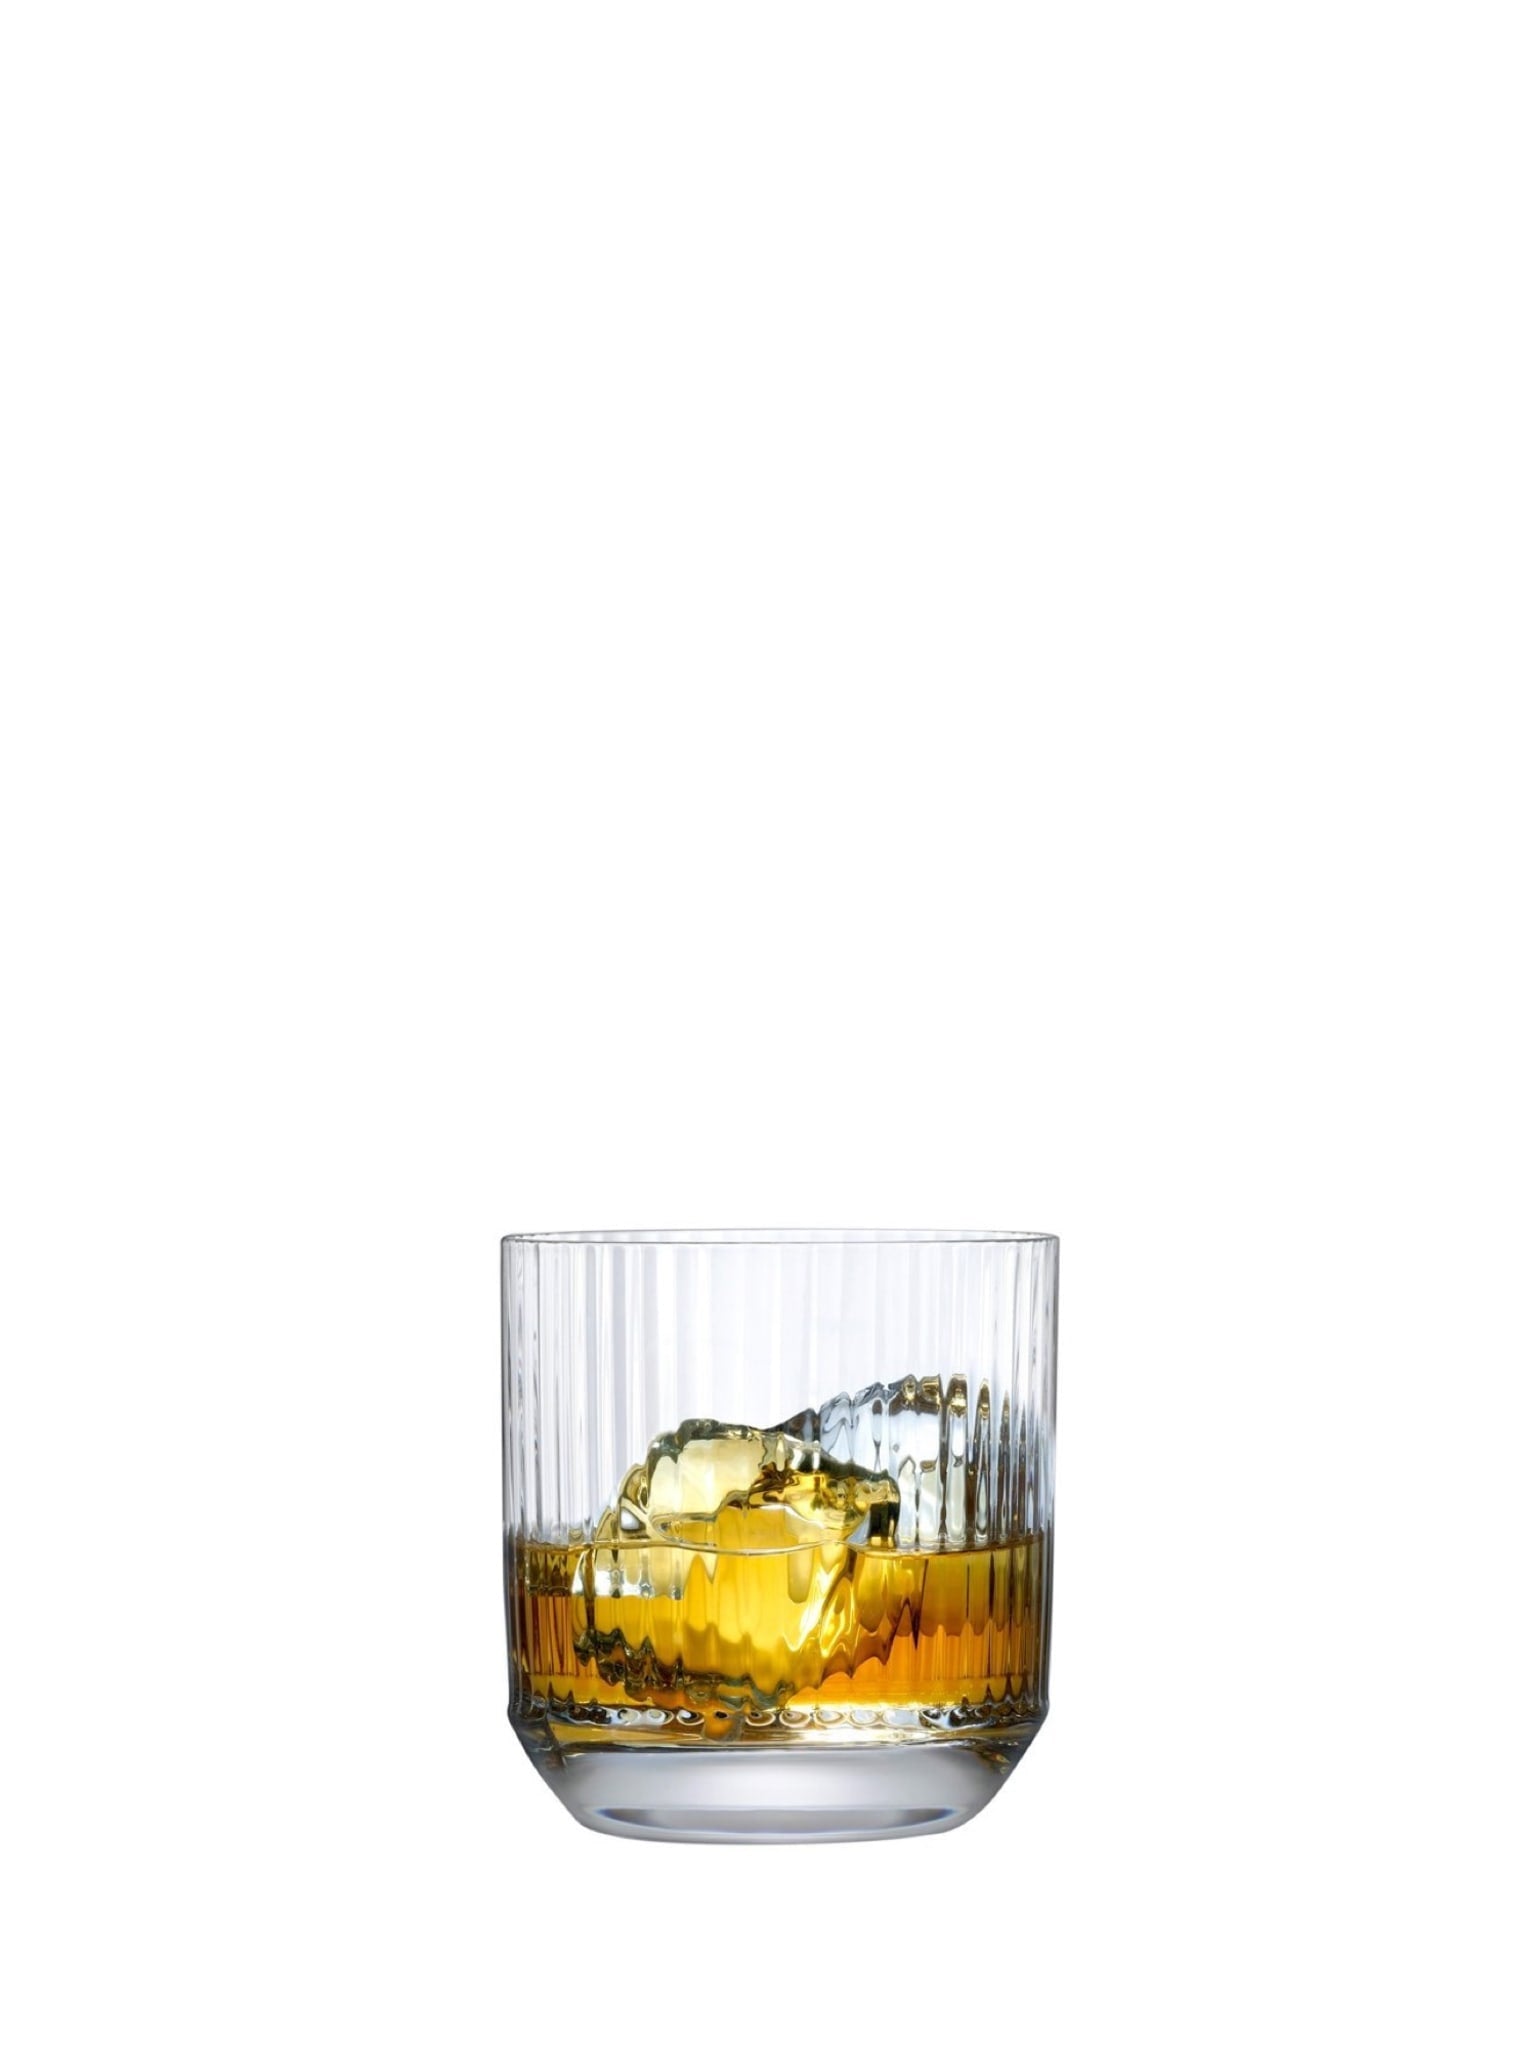 Stort whiskyglas med top - Ideel til at fremhæve aromaen og smagen af din foretrukne whisky.